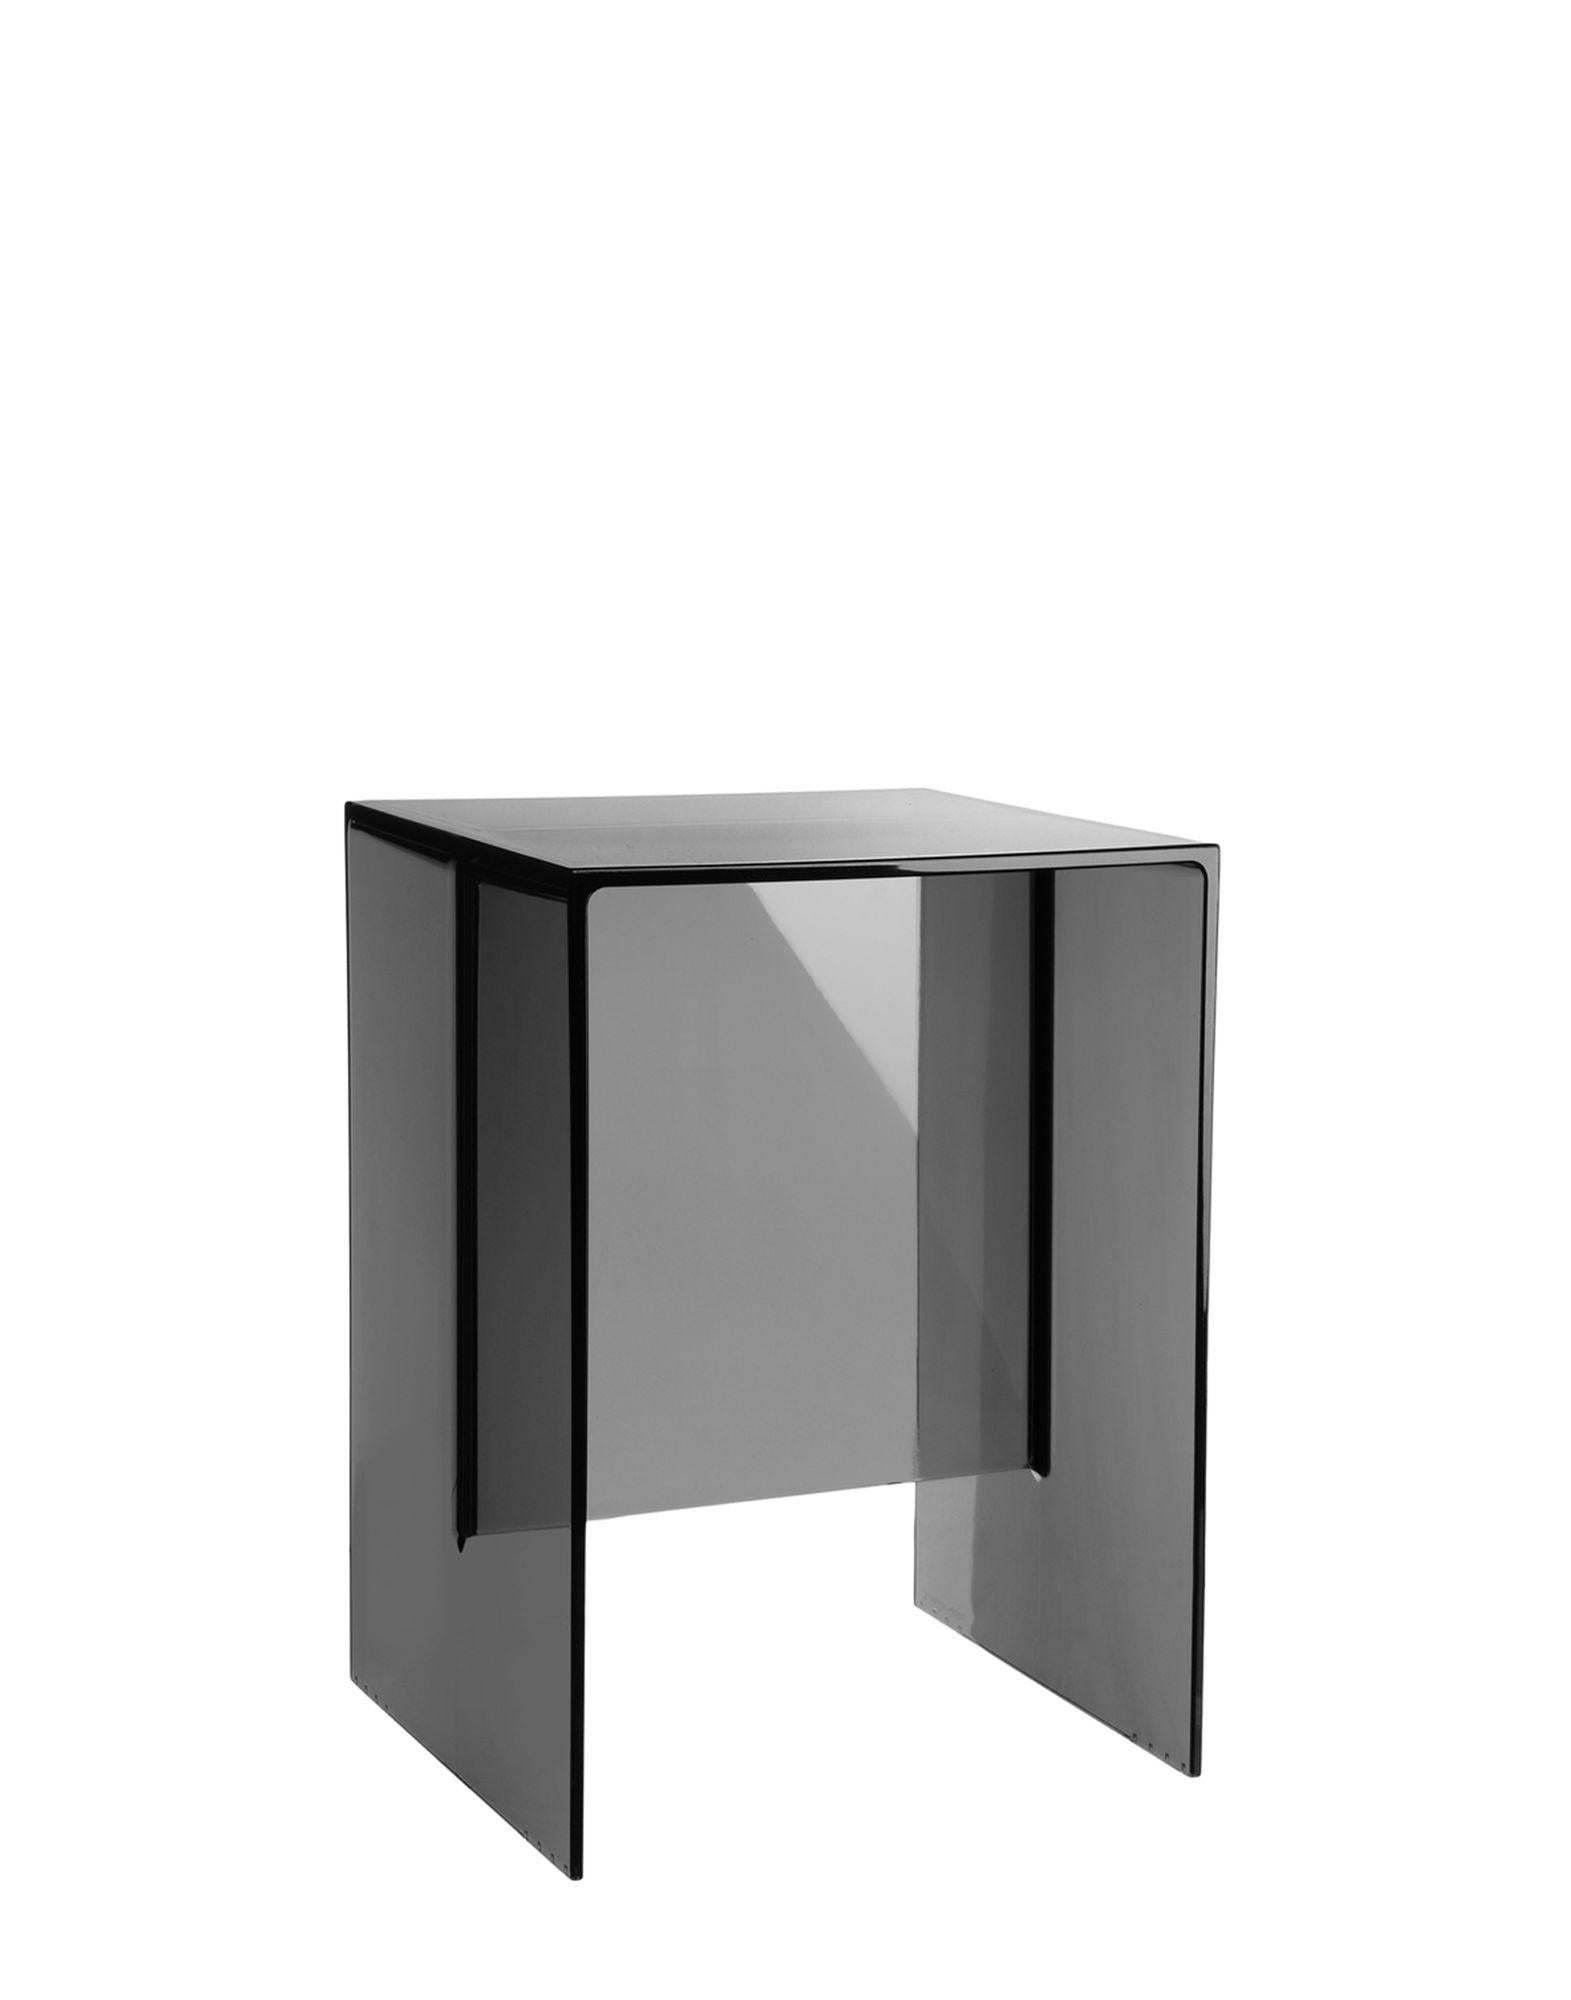 Tabouret ou table monolithique en plastique transparent, dont l'épaisseur souligne la pureté géométrique. Un accessoire pratique, fonctionnel et polyvalent, à utiliser partout dans la maison.

Dimensions : Hauteur 18,5 po ; largeur 13 po ;